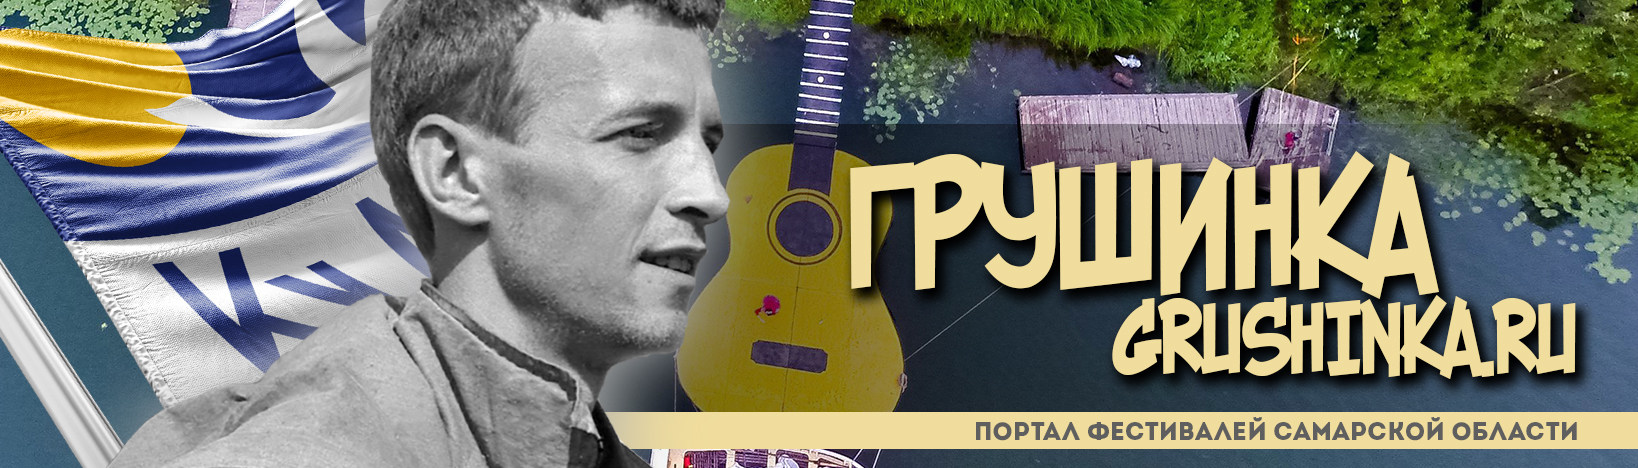 Грушинка.ру — Грушинский фестиваль, Метафест и другие